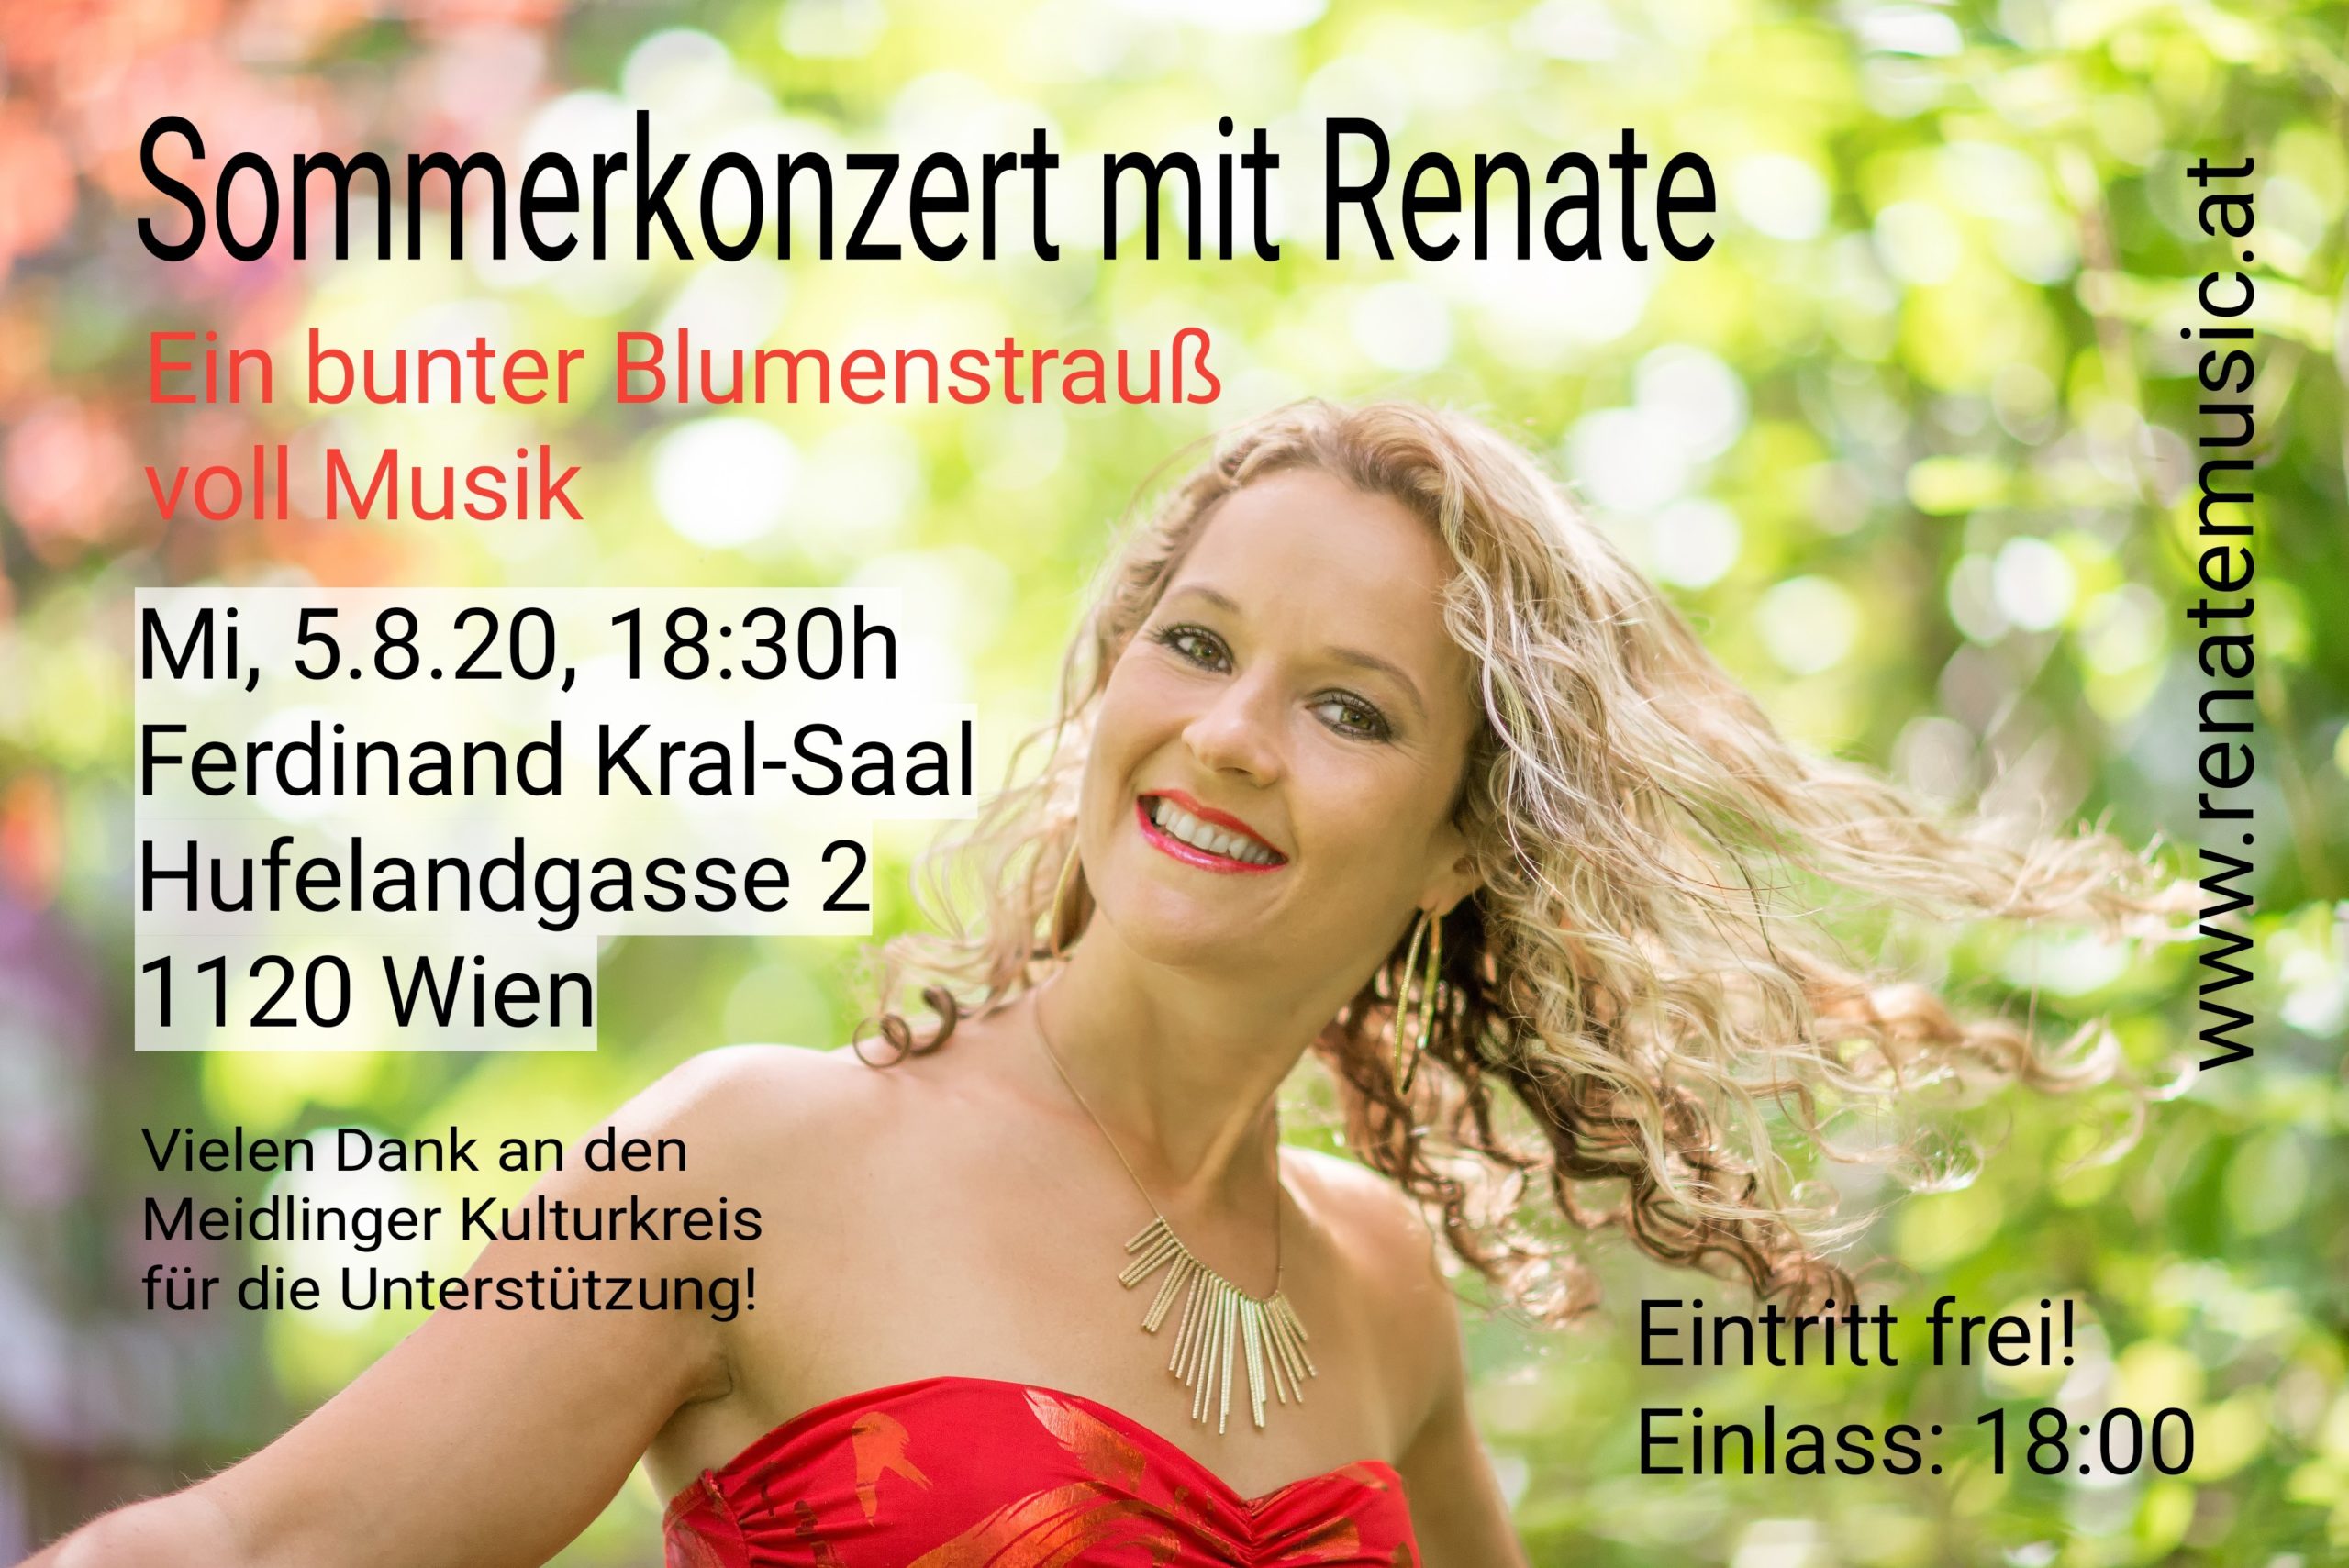 Sommerkonzert mit Renate